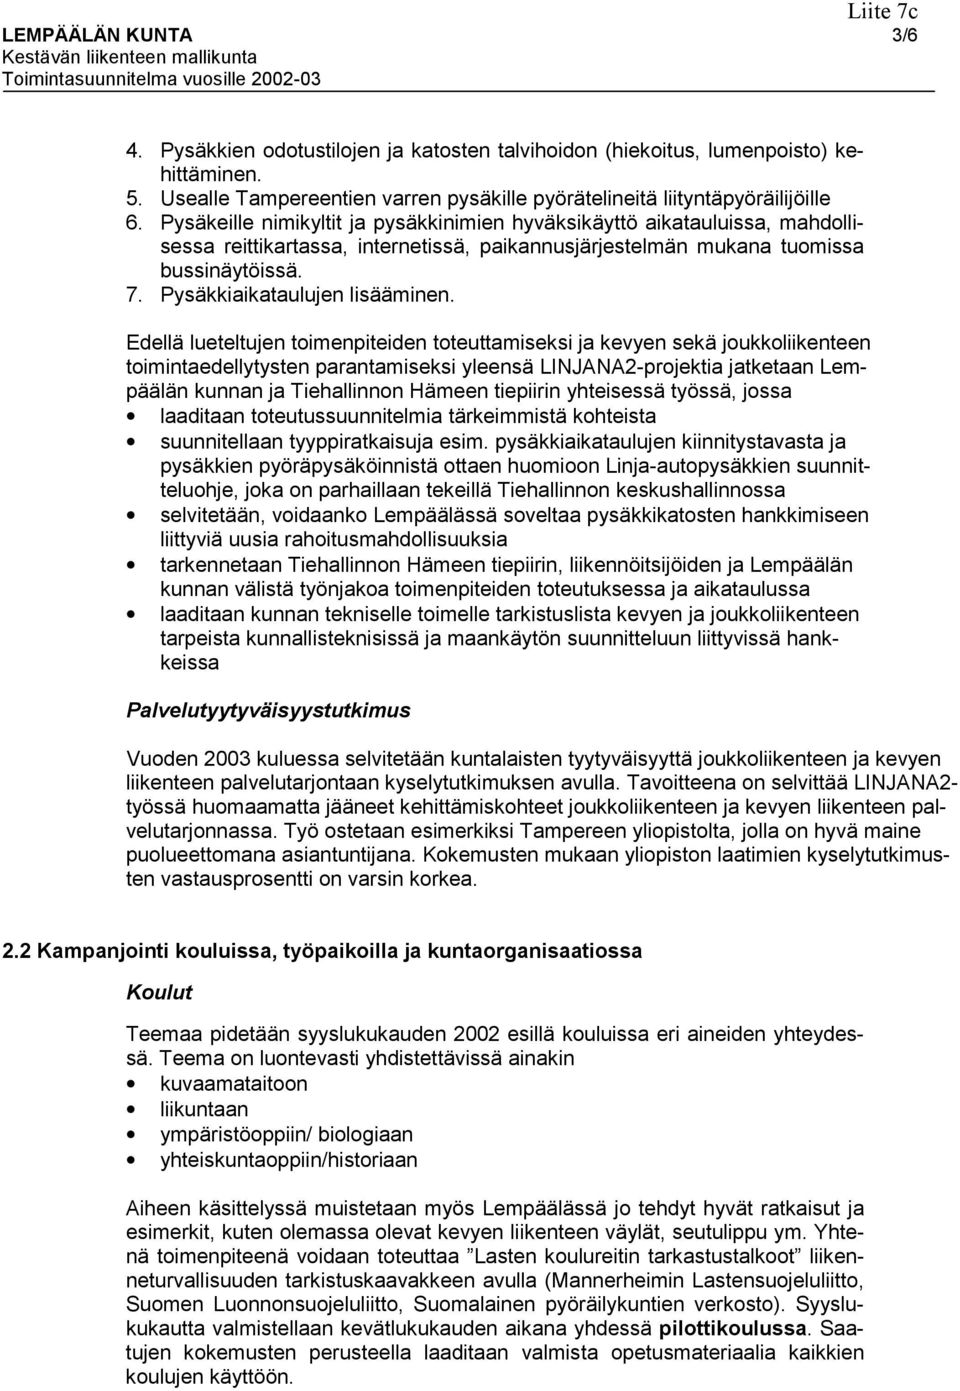 Edellä lueteltujen toimenpiteiden toteuttamiseksi ja kevyen sekä joukkoliikenteen toimintaedellytysten parantamiseksi yleensä LINJANA2-projektia jatketaan Lempäälän kunnan ja Tiehallinnon Hämeen